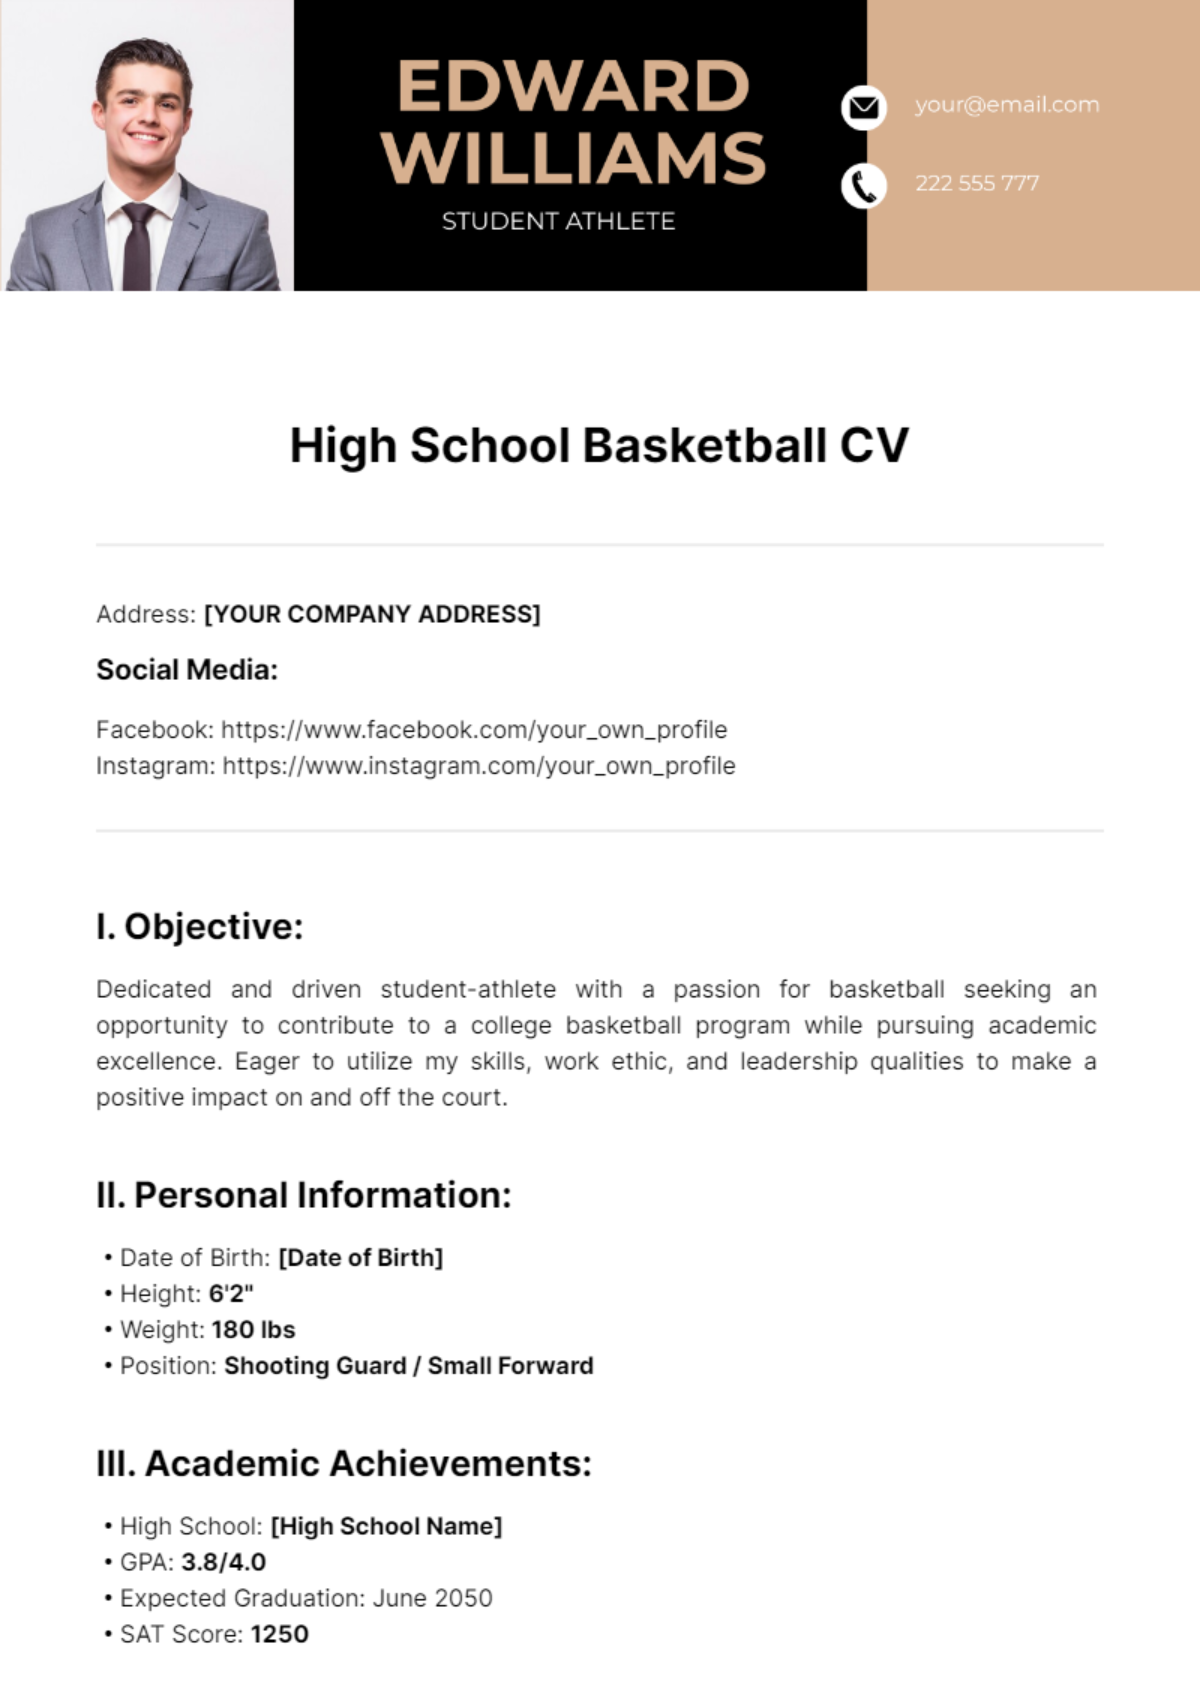 High School Basketball CV Template